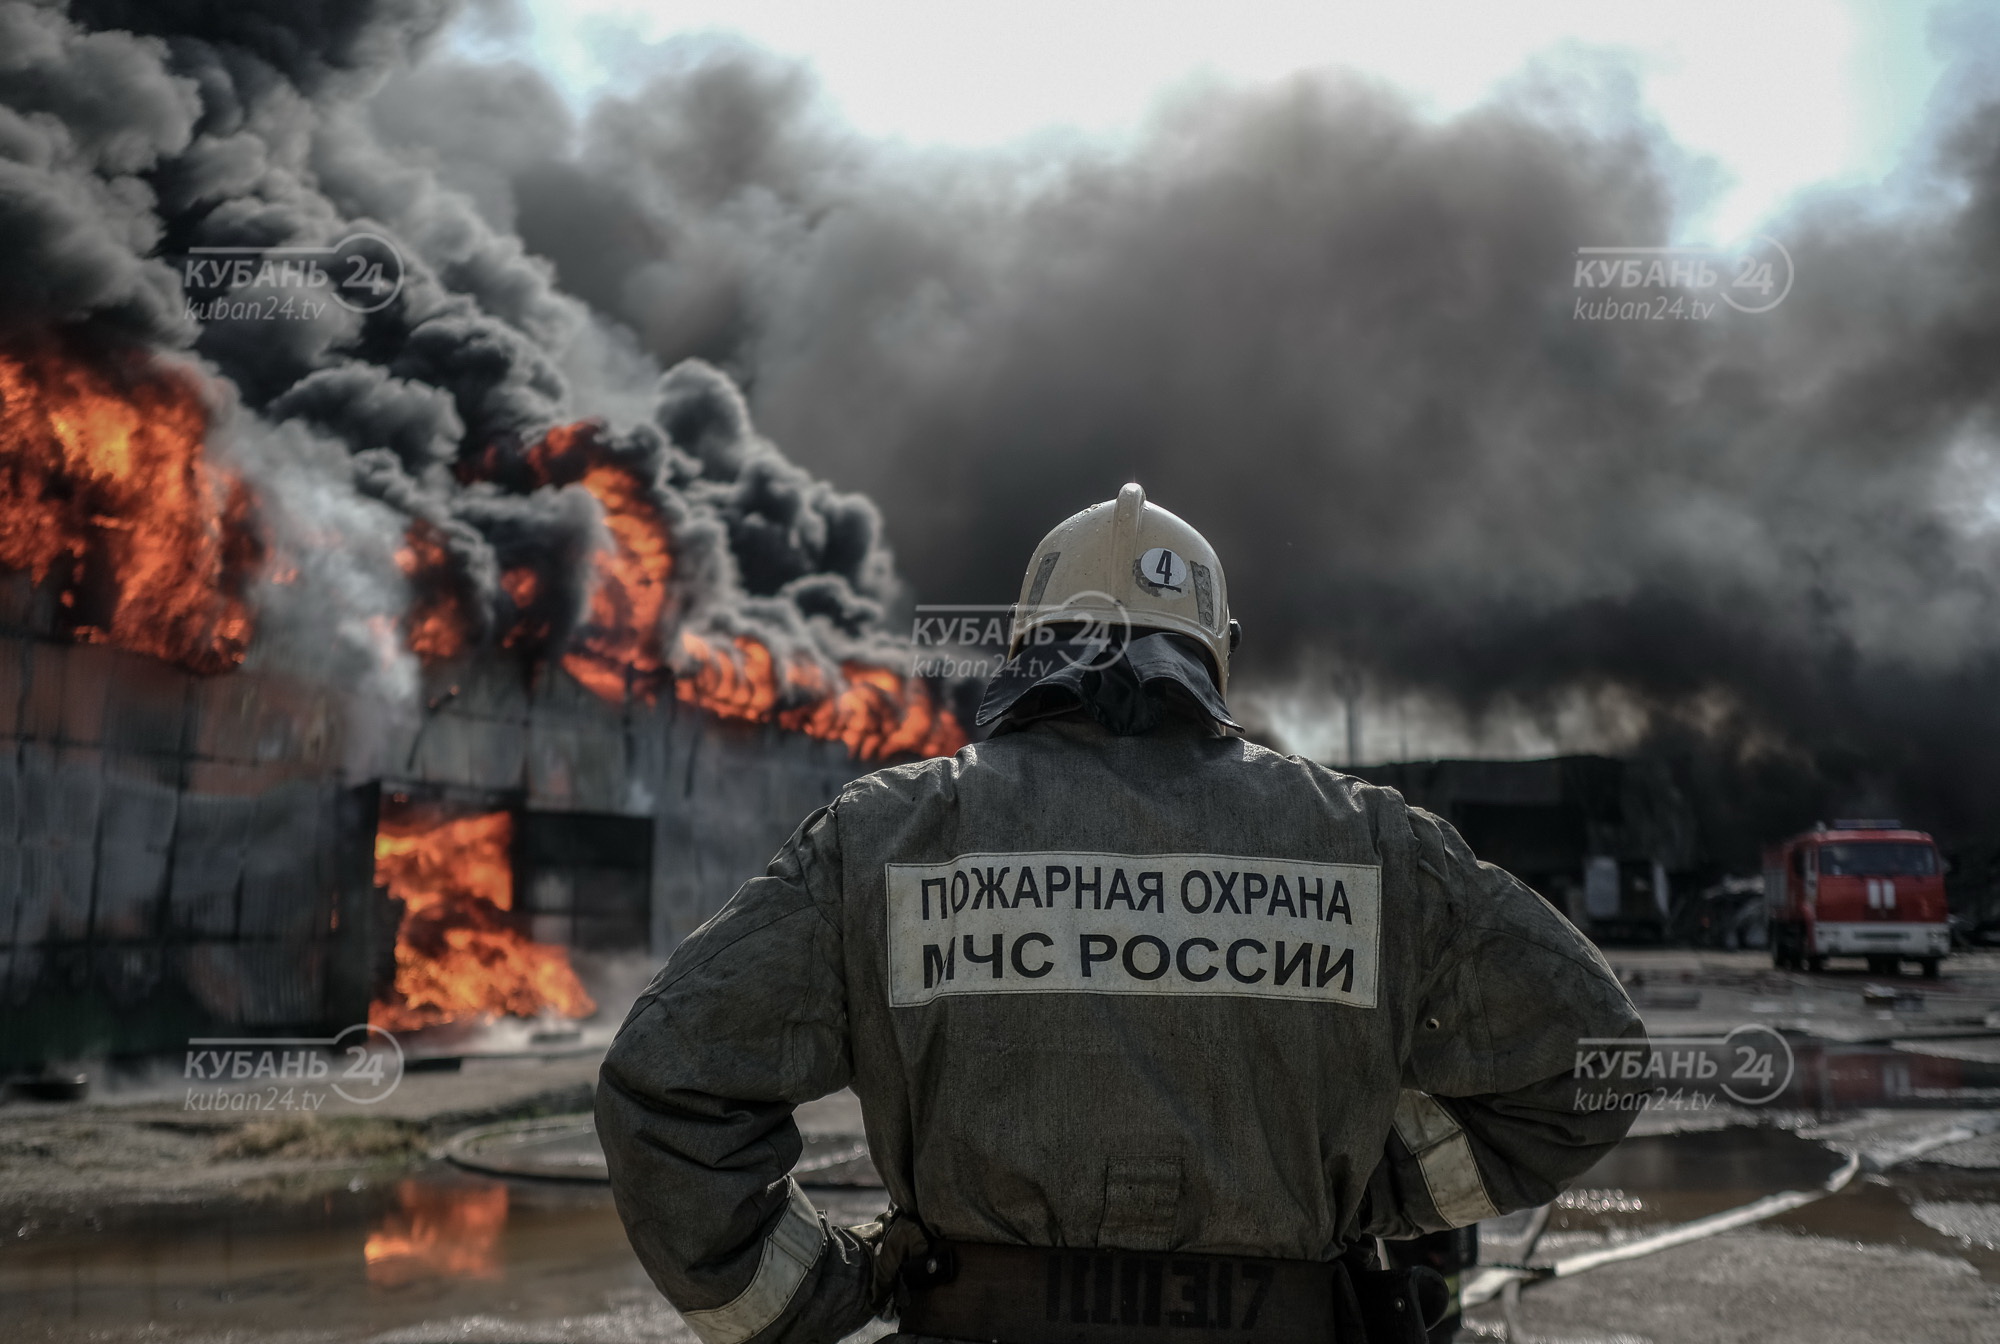 Ущерб от пожара на складе шин в Краснодаре составил более 100 млн рублей